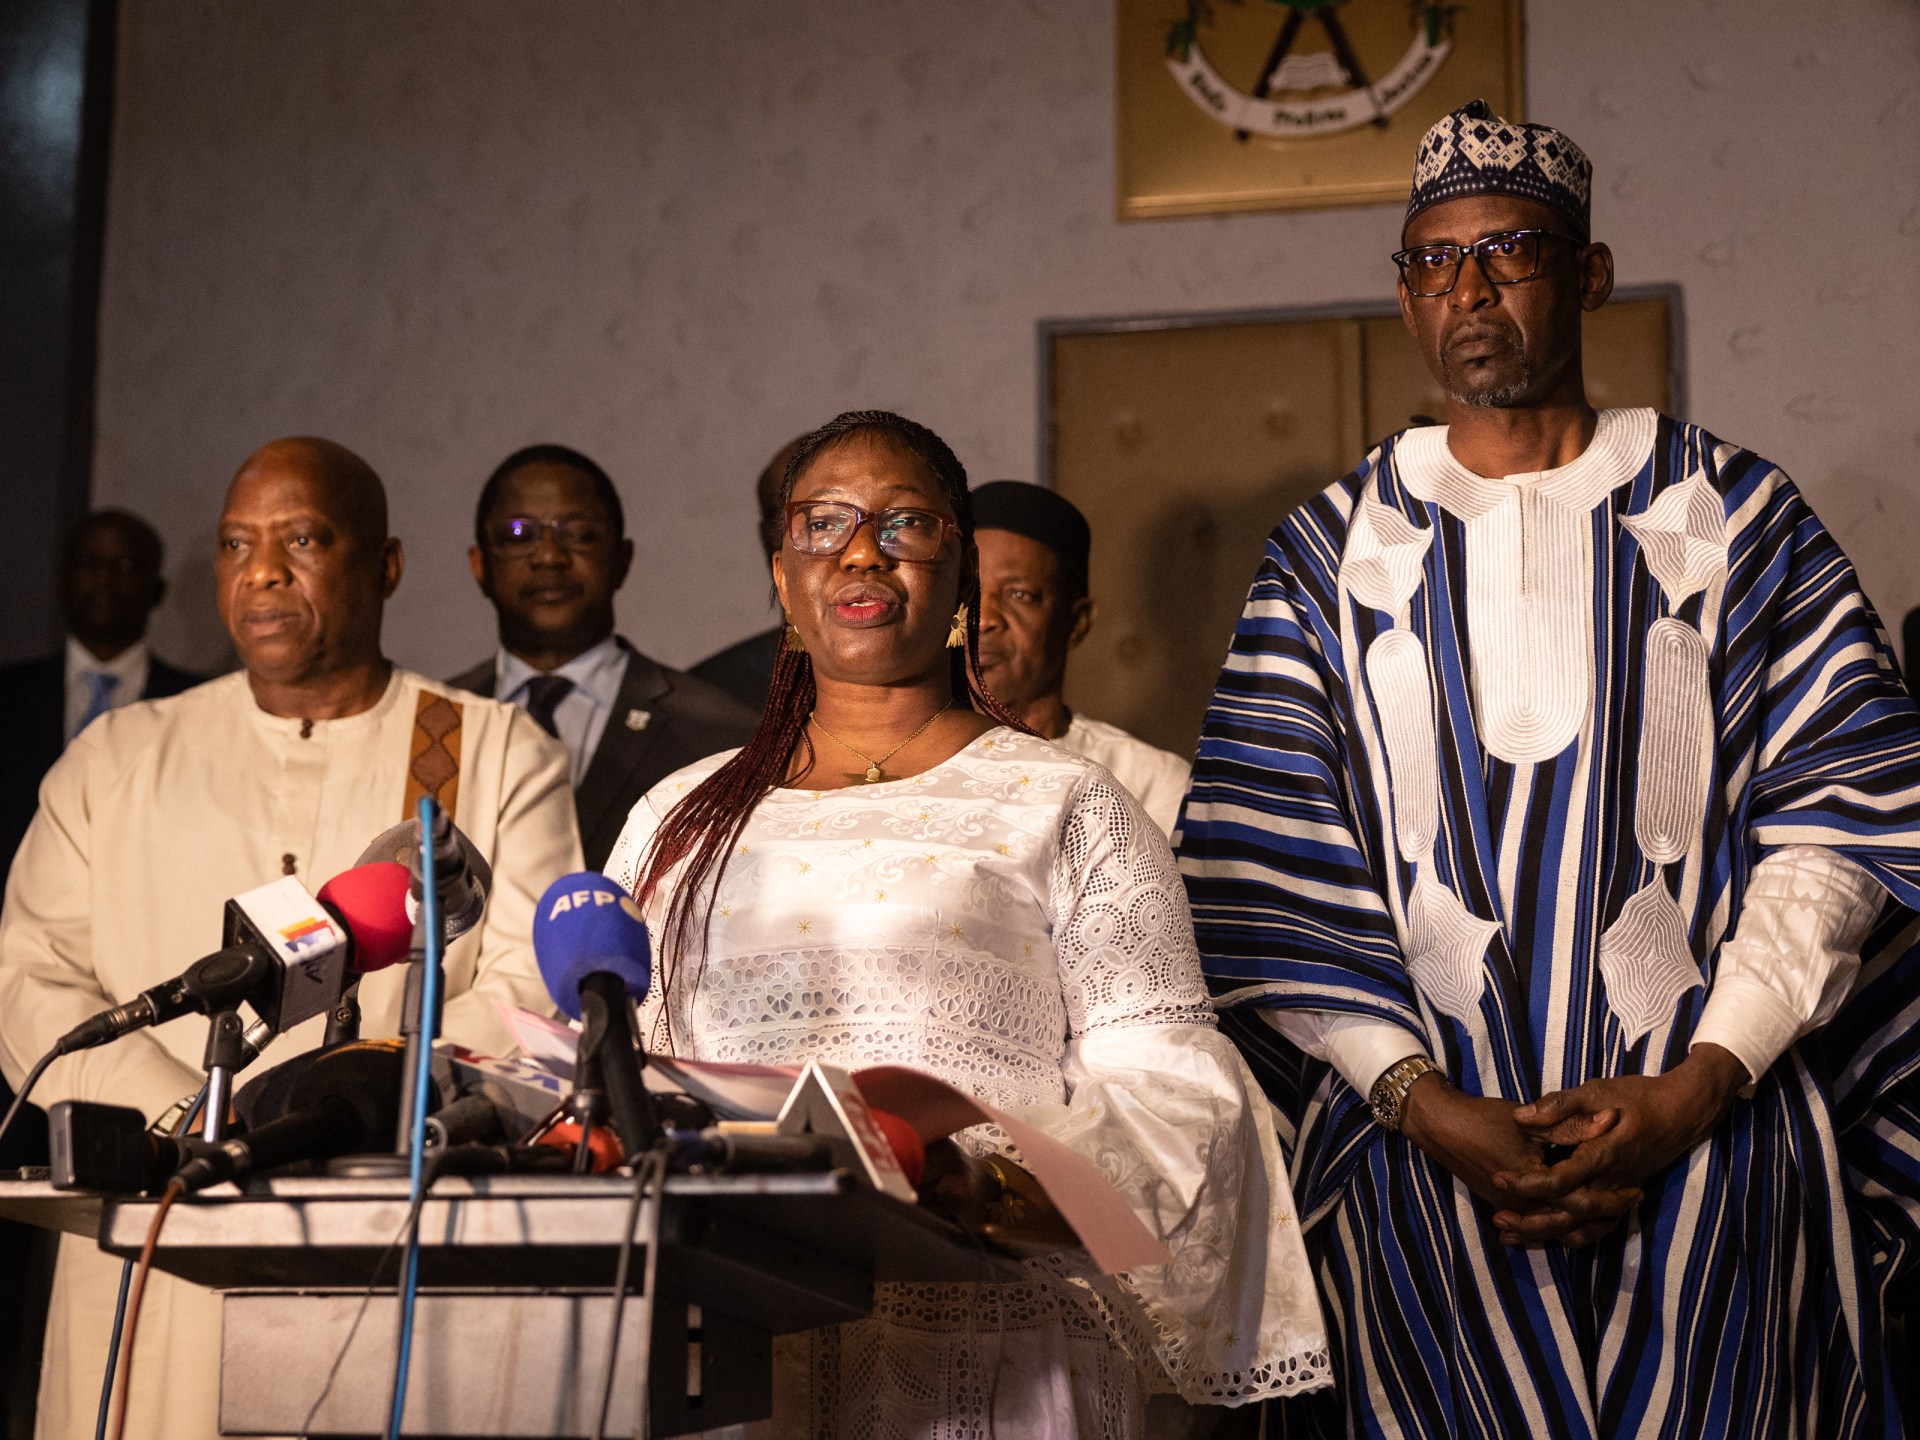 Le Mali, la Guinée et le Burkina Faso cherchent à réintégrer les blocs régionaux |  Nouvelles